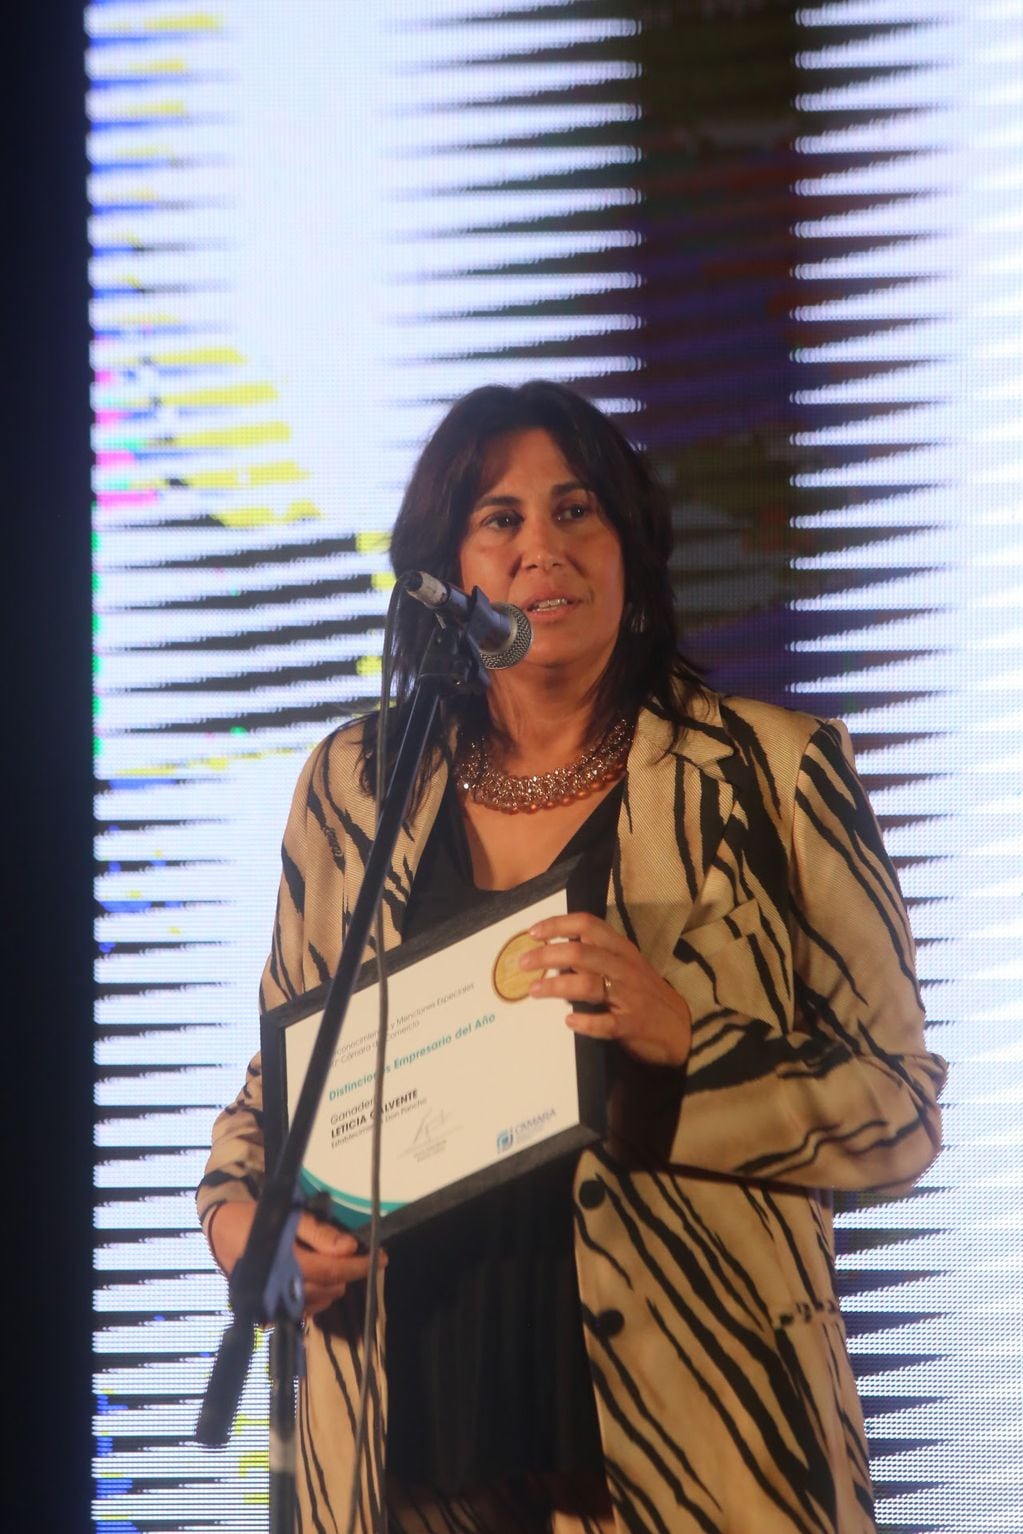 Leticia Calvente, fue dintinguida como ganadera del año por la Cámara de Comercio de General Alvear.